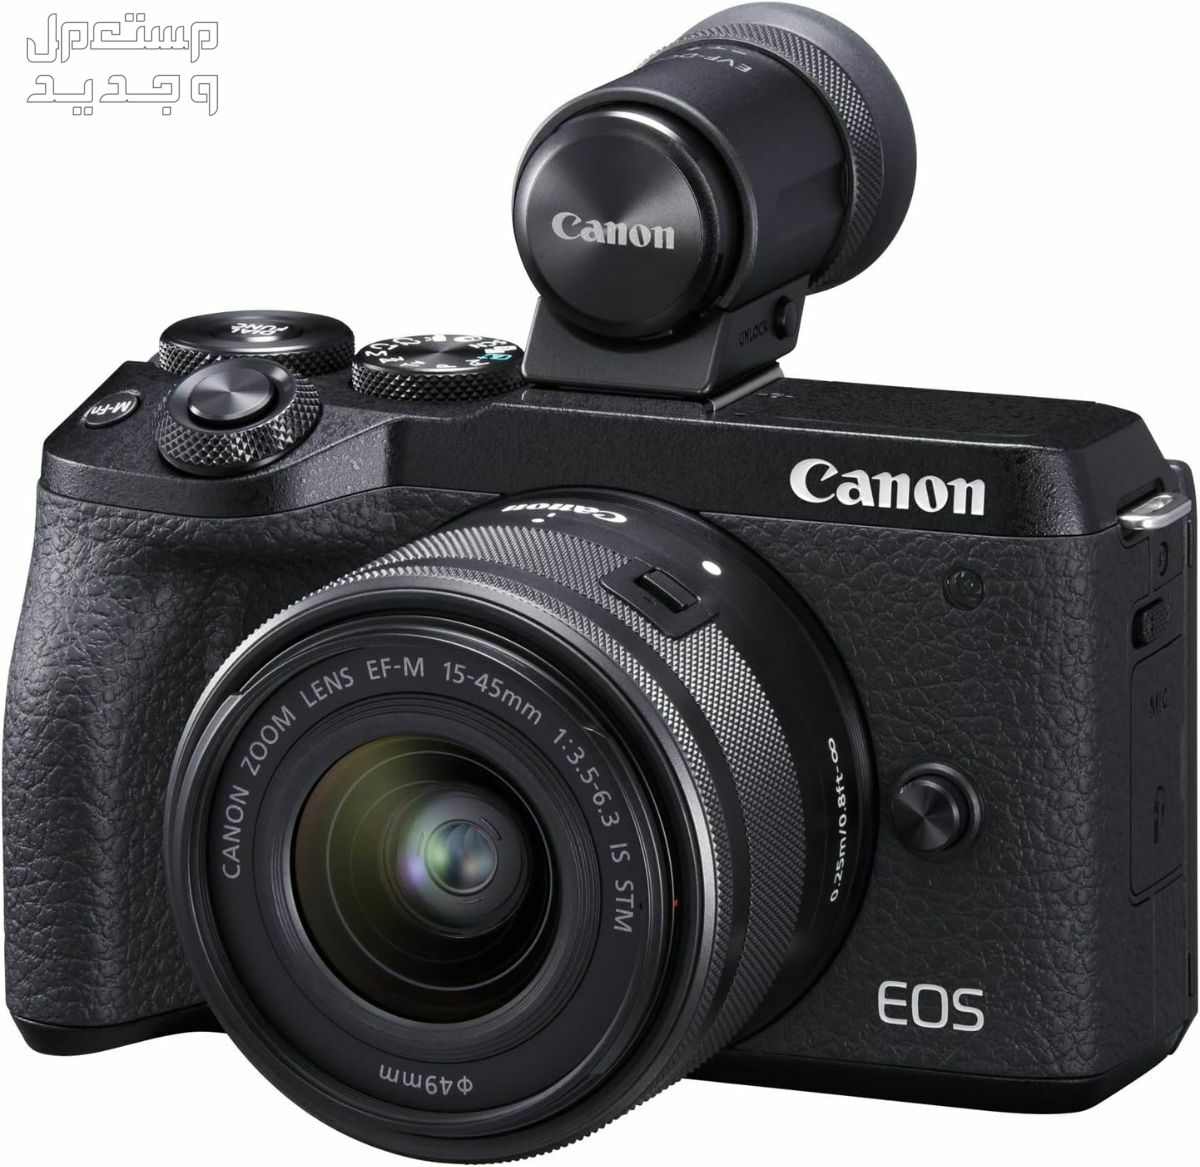 سعر ومميزات ومواصفات أرخص 5 كاميرات تصوير من كانون في فلسطين كاميرا Canon EOS M6 Mark II